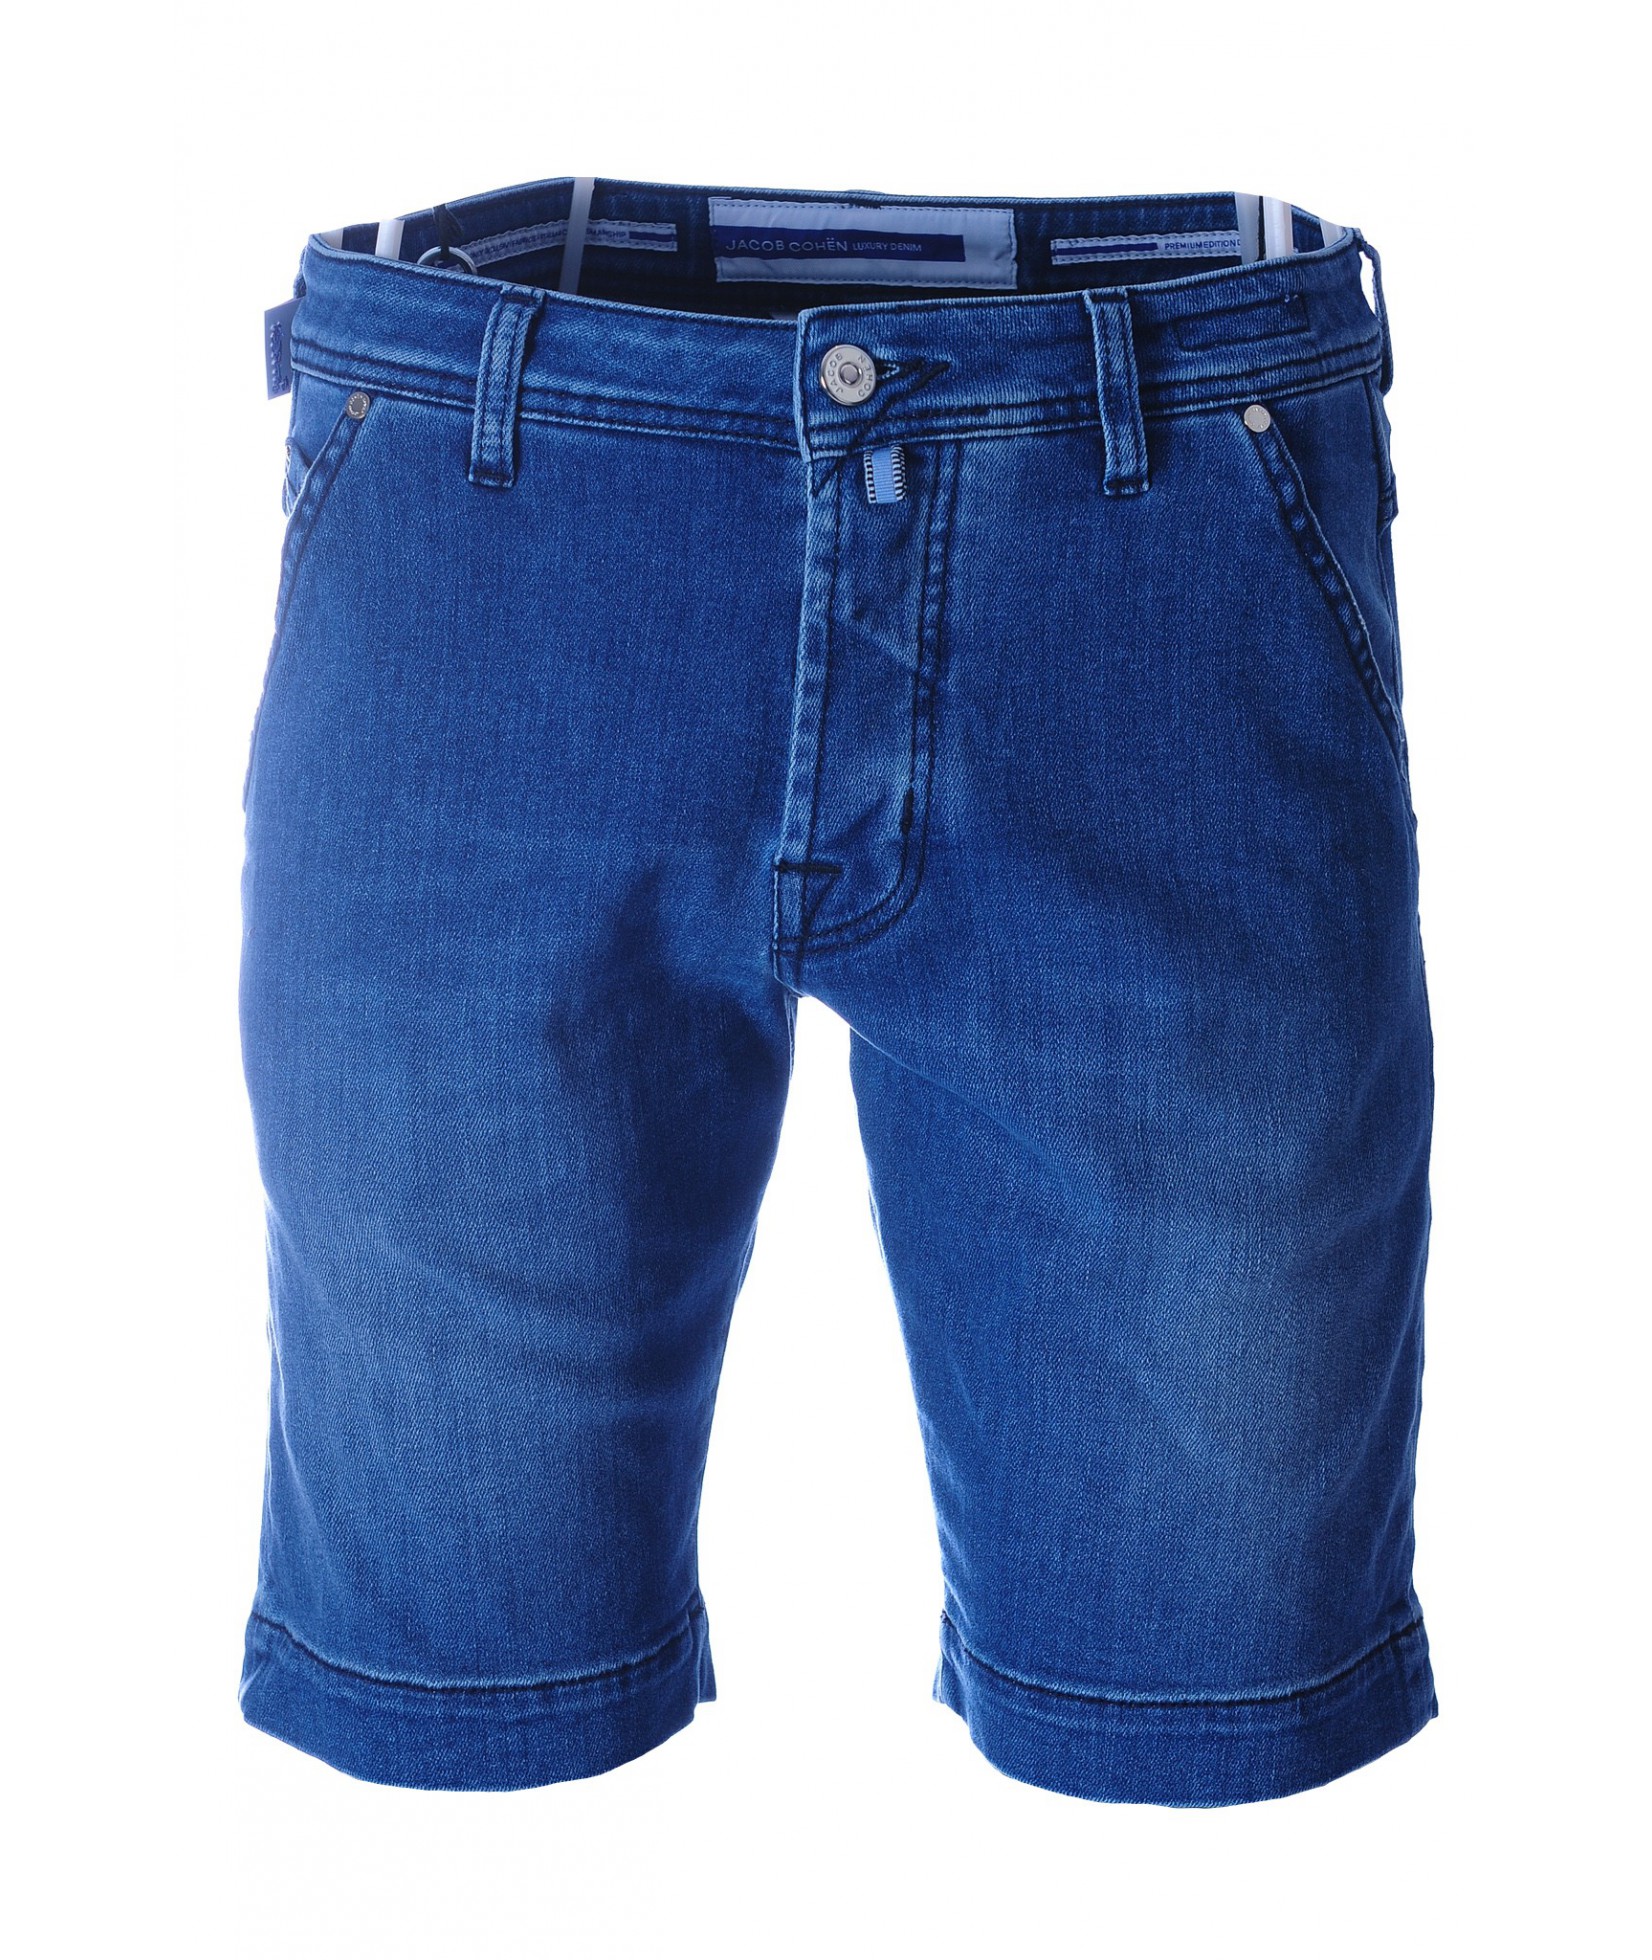 Jacob Cohen Short Jeans Bleu foncé (35629)